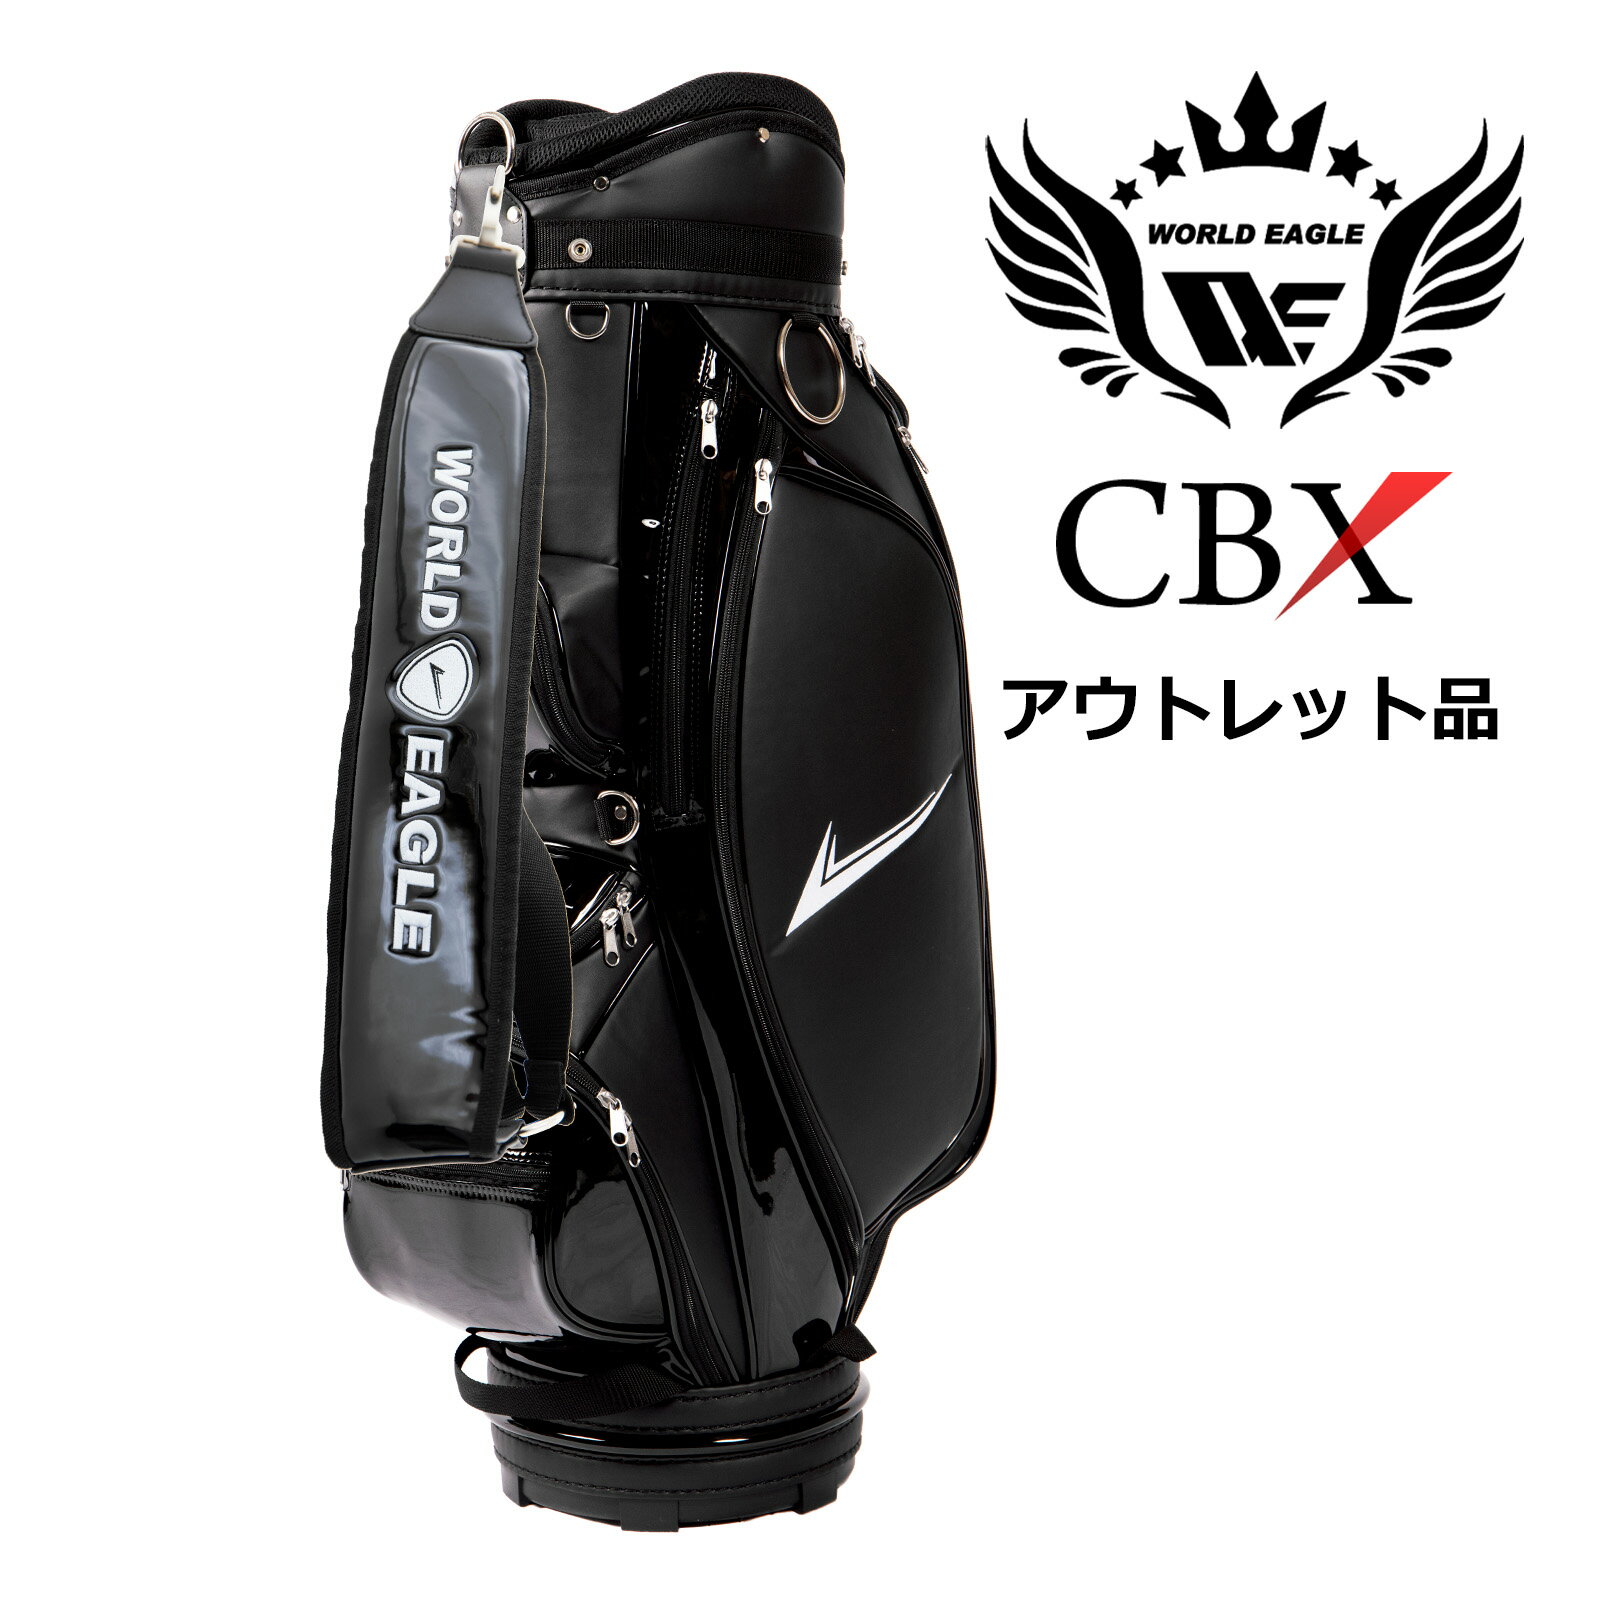 アウトレット品 わけあり 展示 撮影 ワールドイーグル メンズ WE-CBX キャディバッグ 001 ブラック 高級感のある上品なフェイクレザー 最適な9.5型 しかも軽量 ゴルフバック キャディバッグ カ…